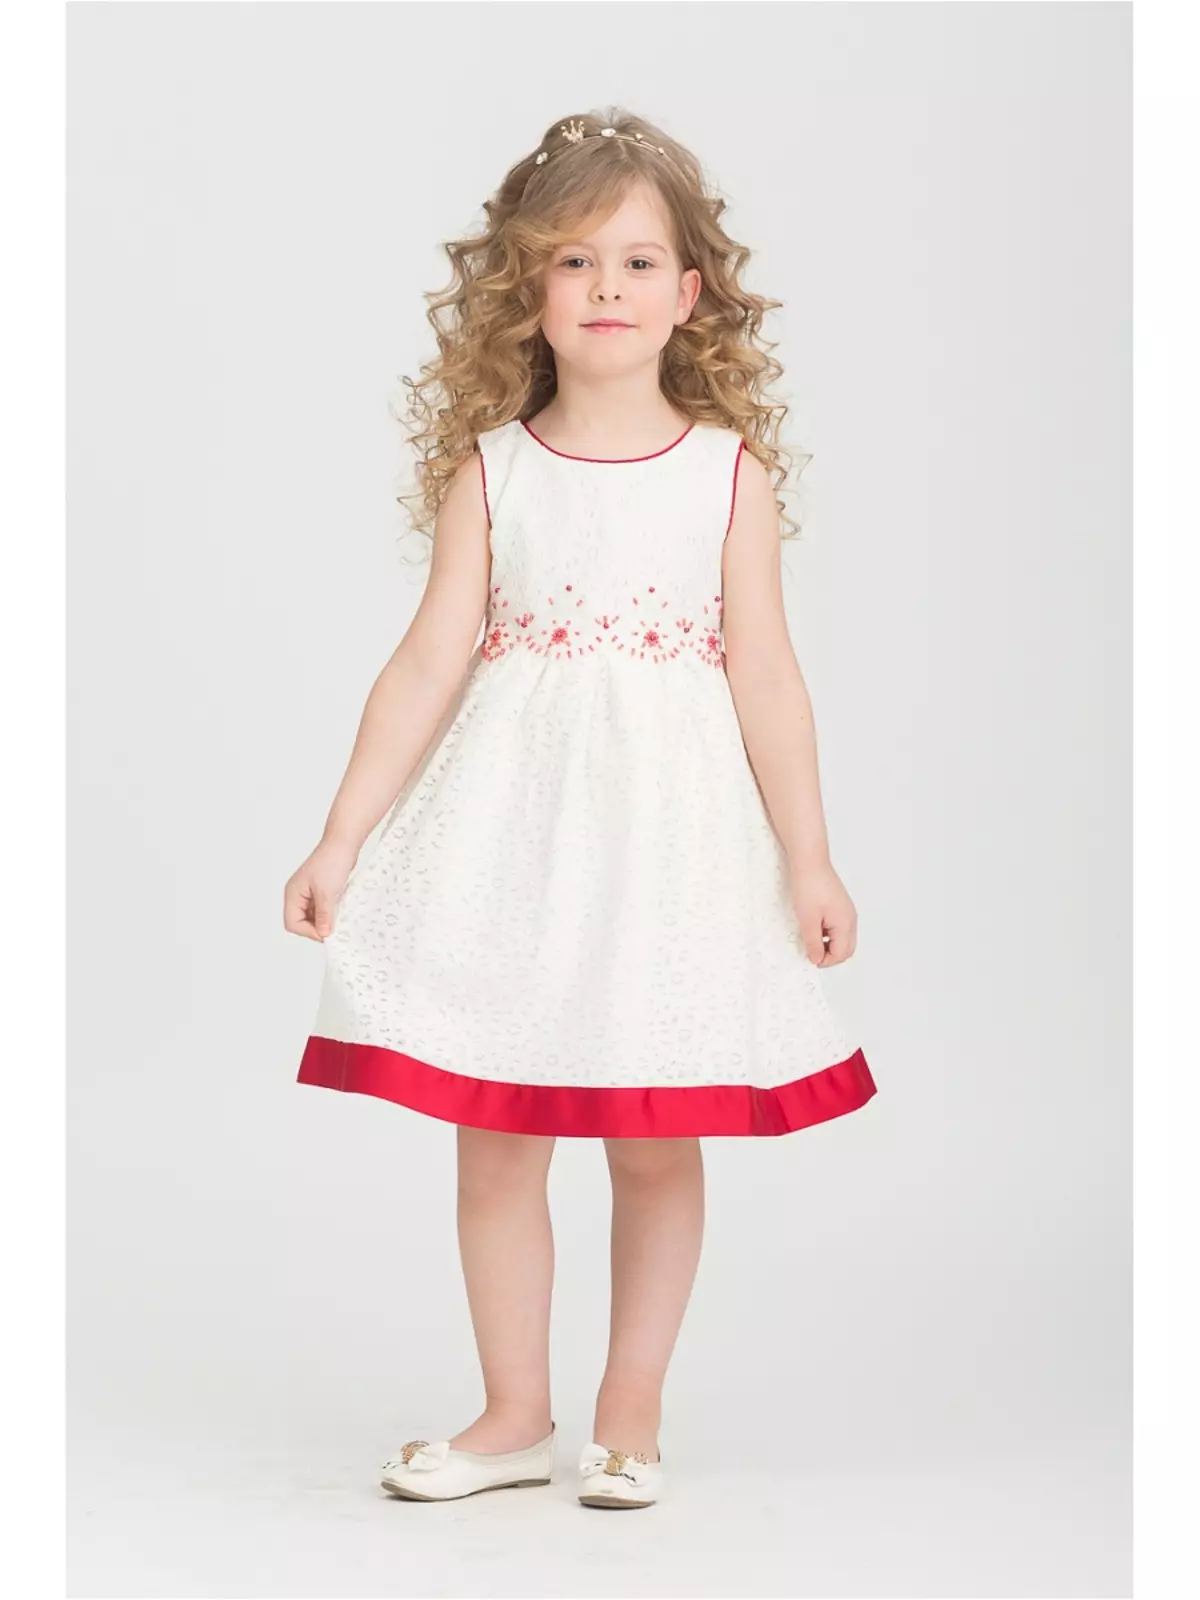 لباس برای دختران کودک استین (50 عکس): مدل های با کیپ، کت و دیگر لباس کودکان 3766_8